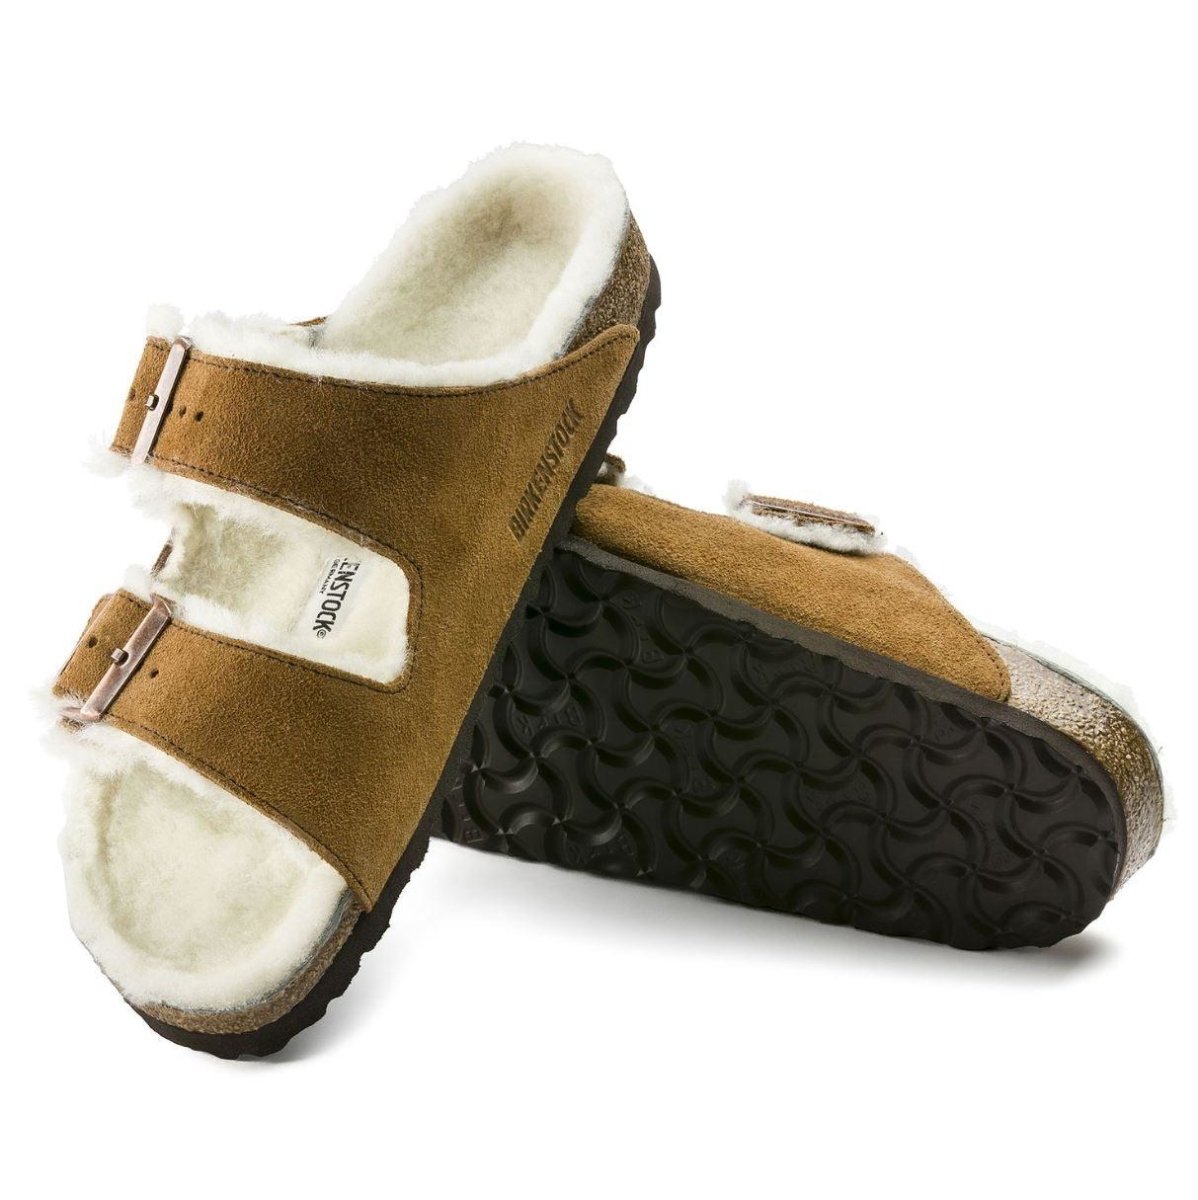 Birkenstock Women's Arizona Shearling Sandals - Mink Suede